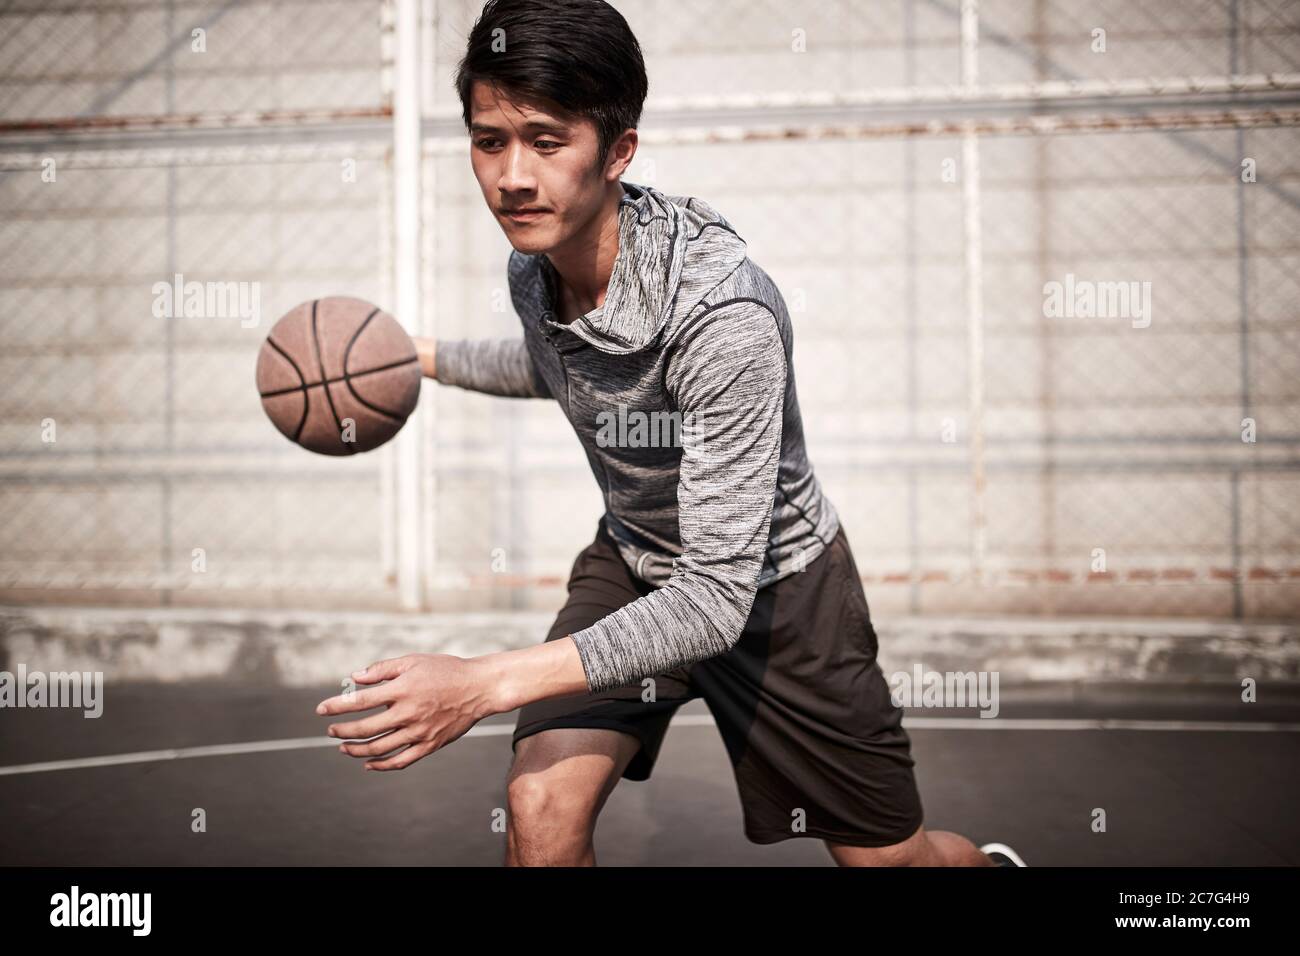 un jeune joueur de basket-ball asiatique s'entraîner à manipuler le ballon sur un terrain en plein air Banque D'Images